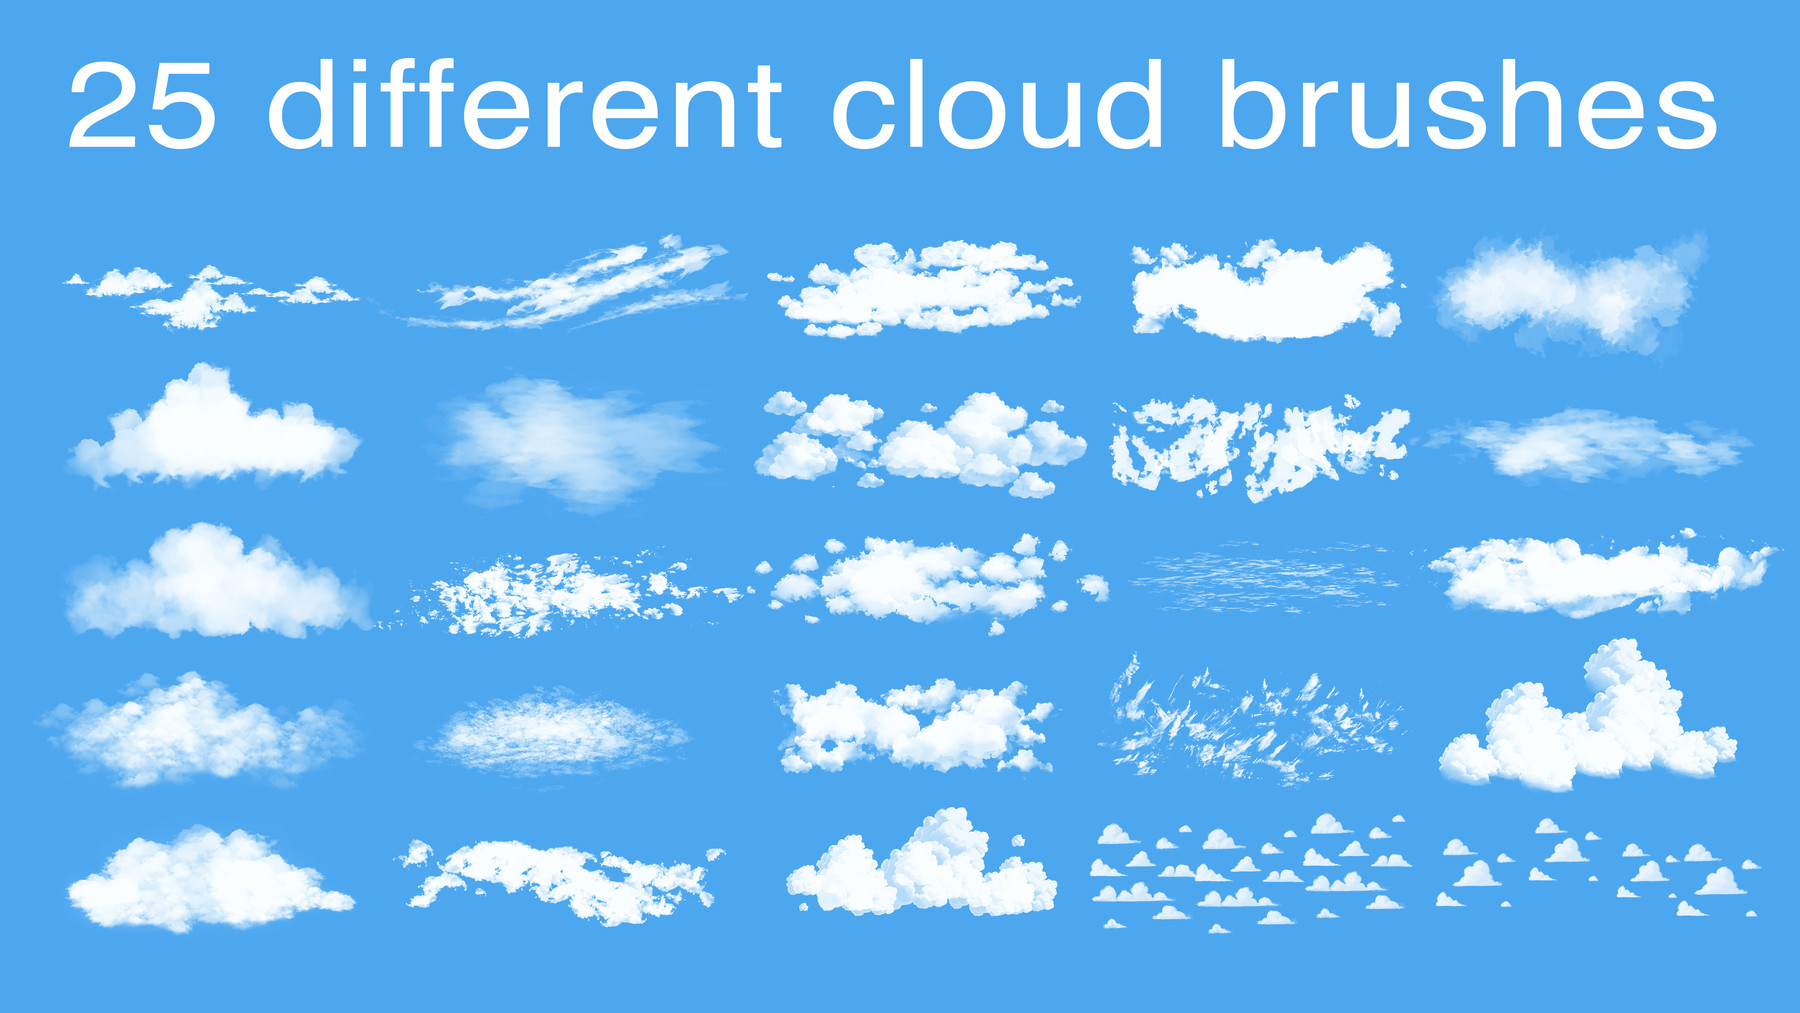 cloud brush illustrator download